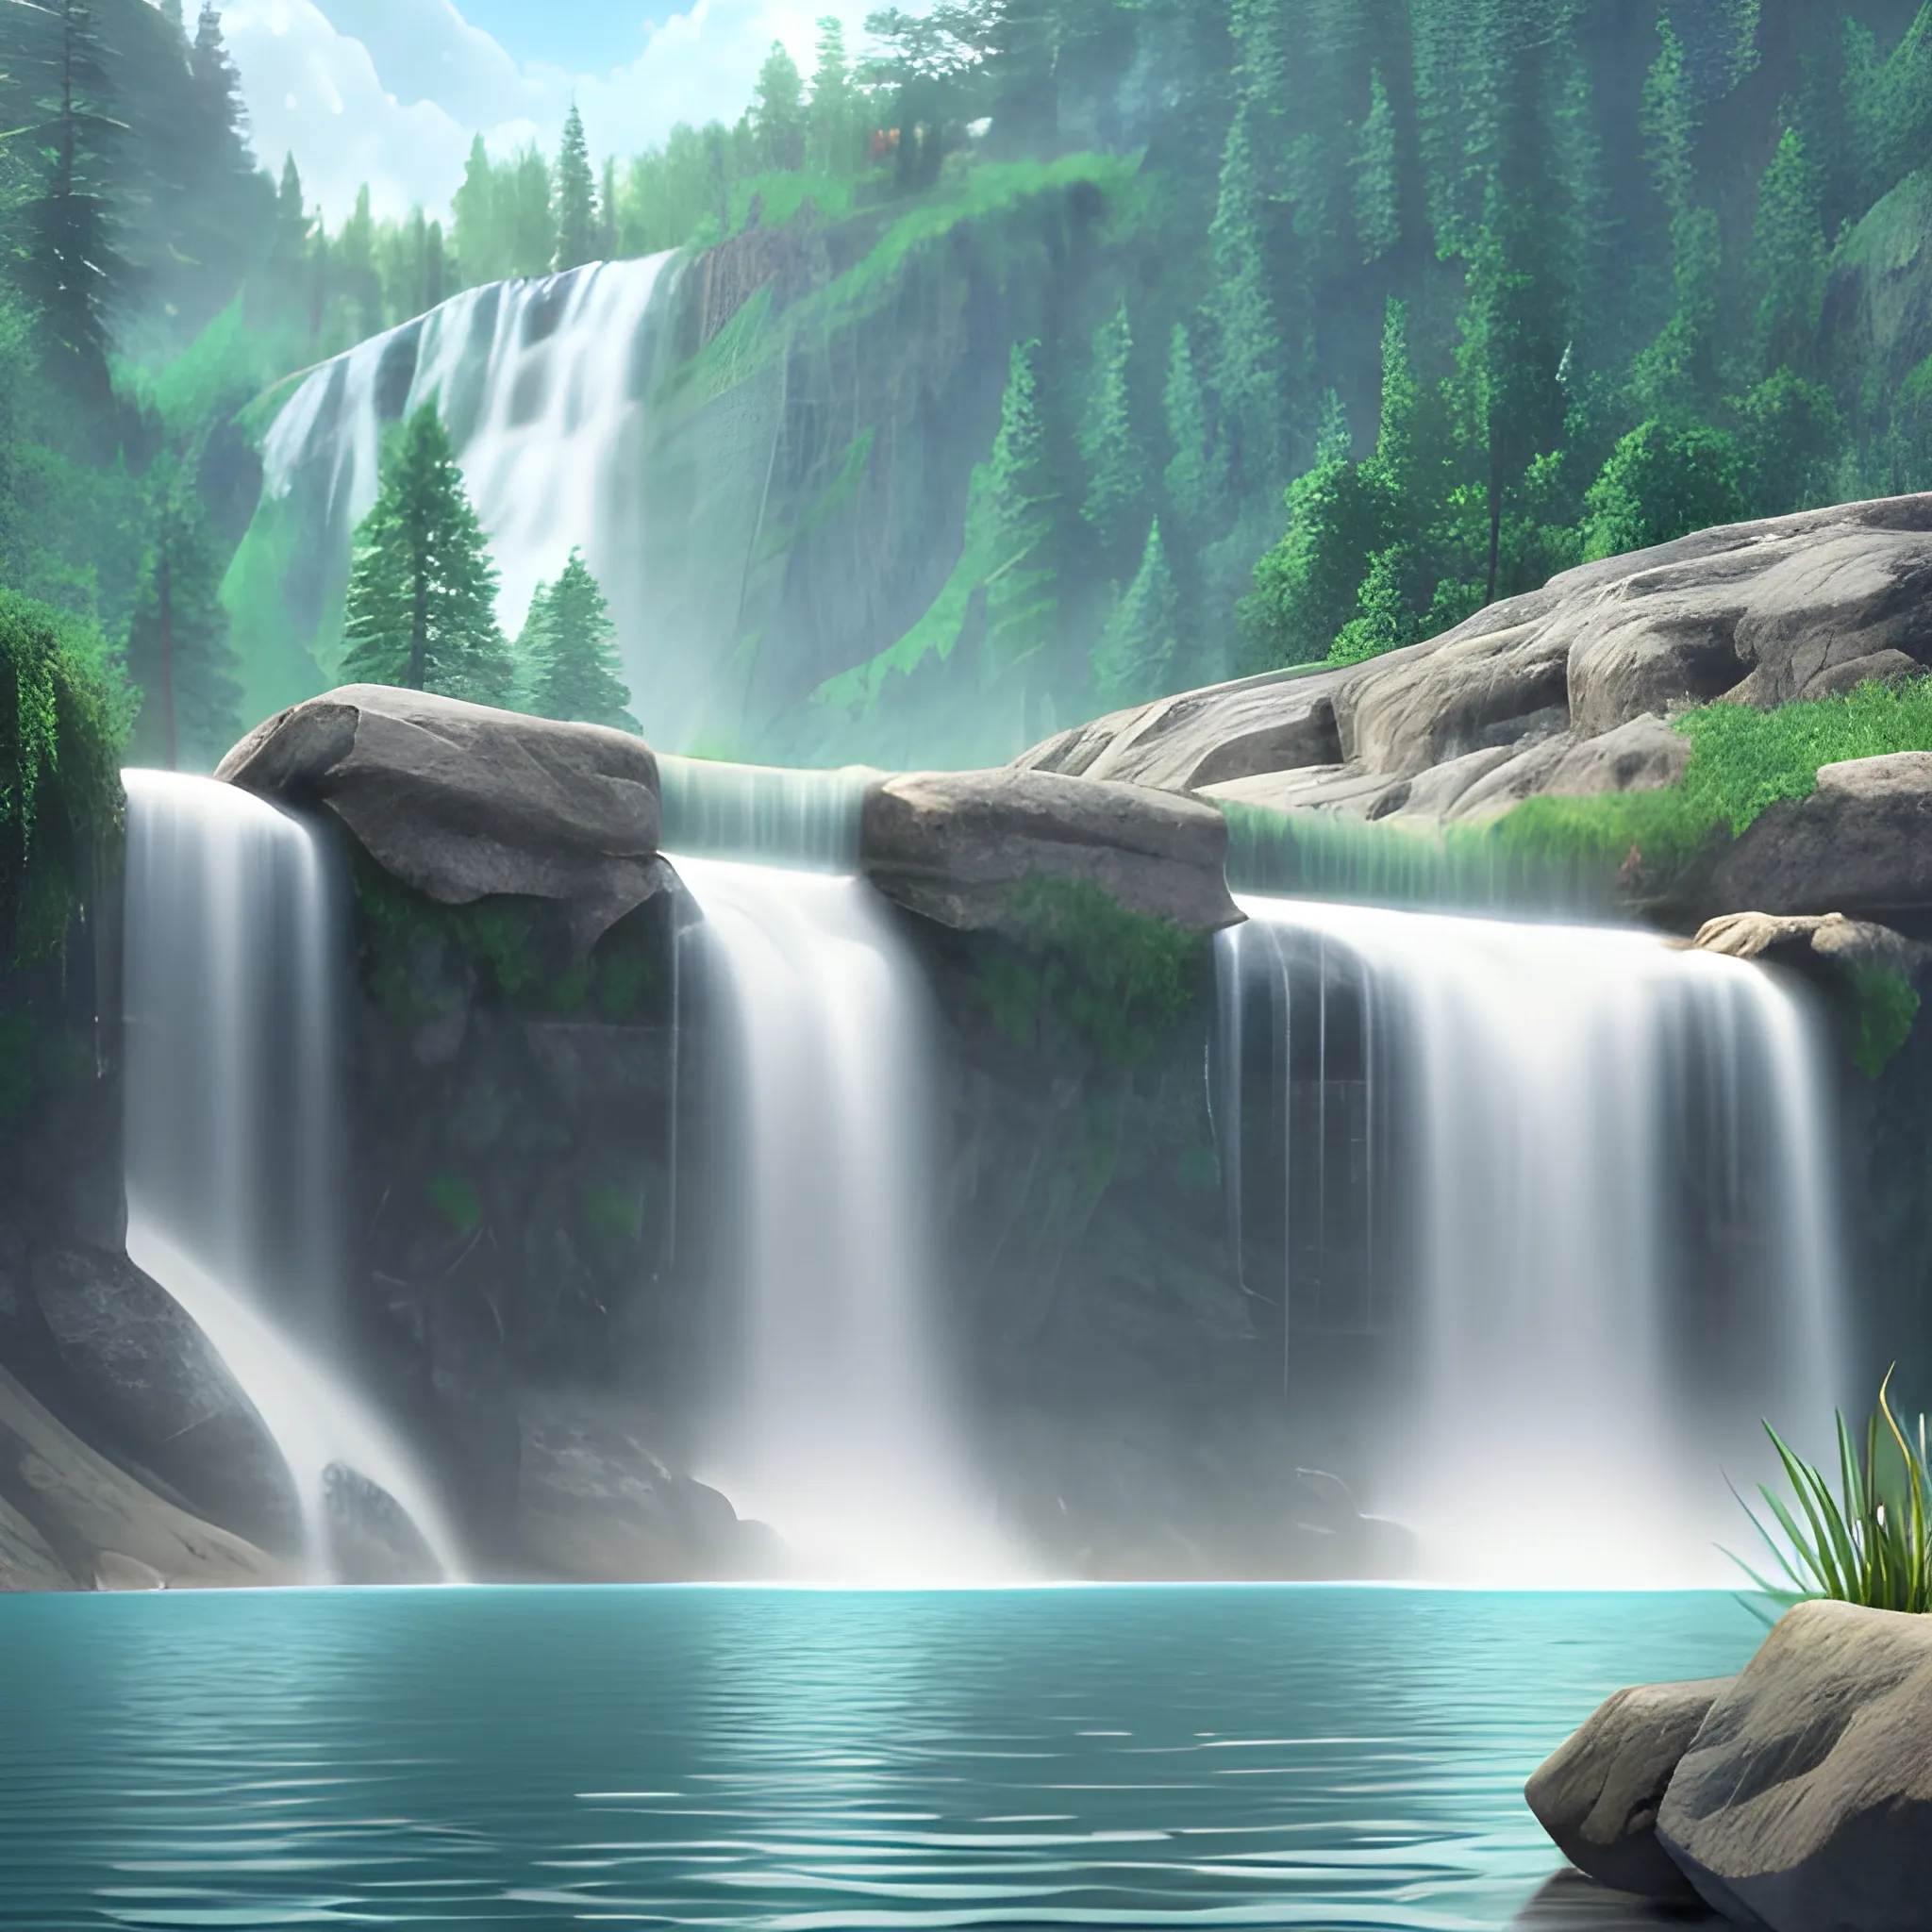 make it lake,  waterfall background, photorealistic, 4k,
